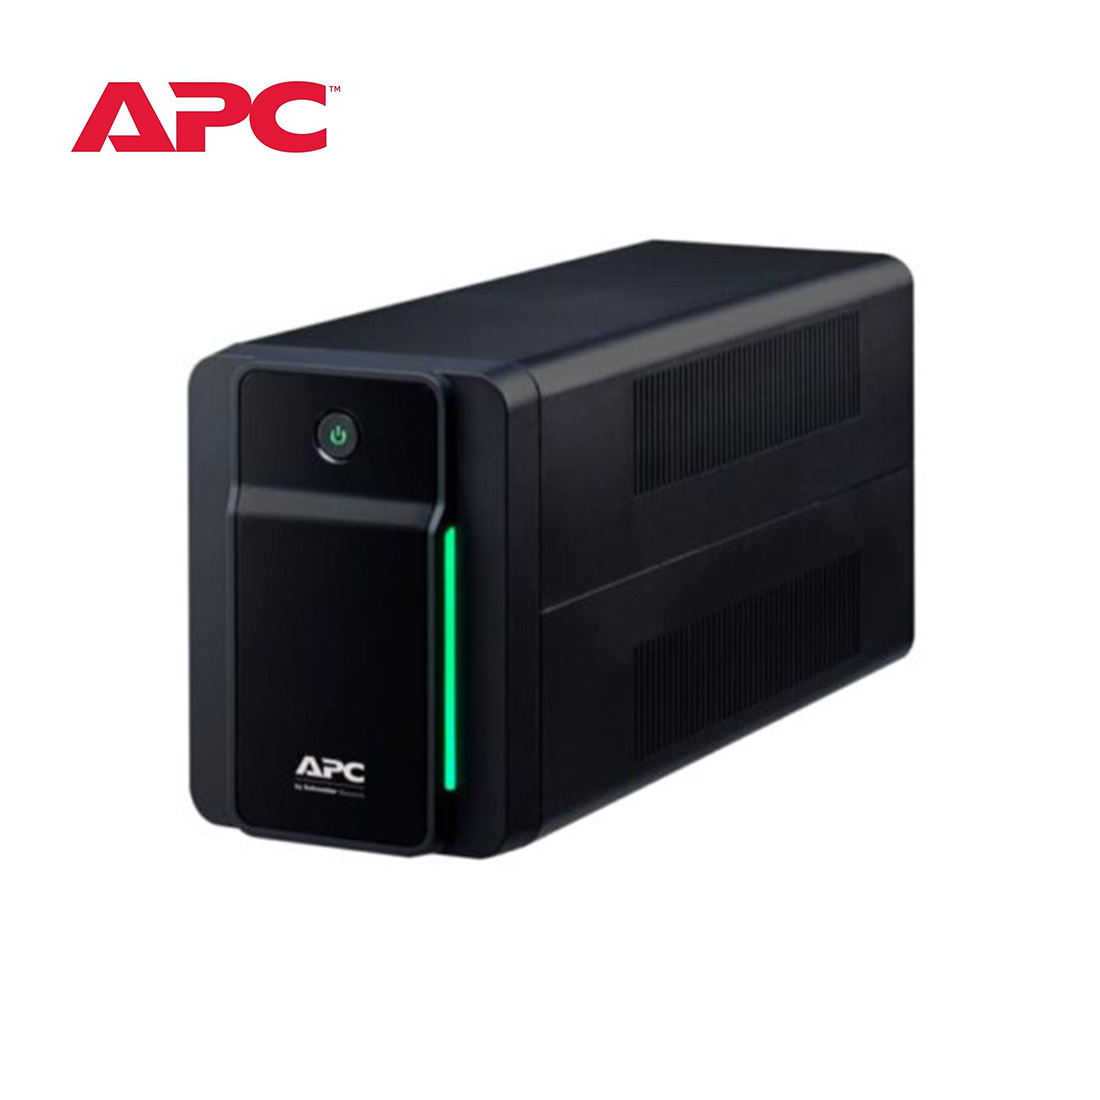 APC-Back-UPS-750VA-230V-AVR-Universal-Sockets